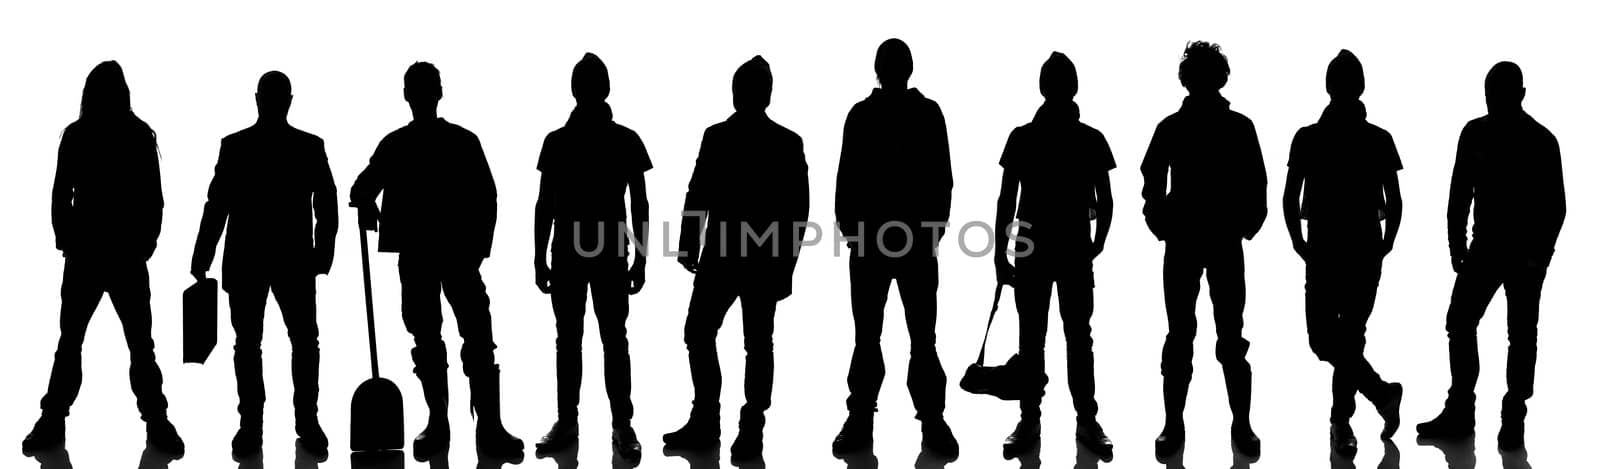 Silhouette of 10 people by gemenacom